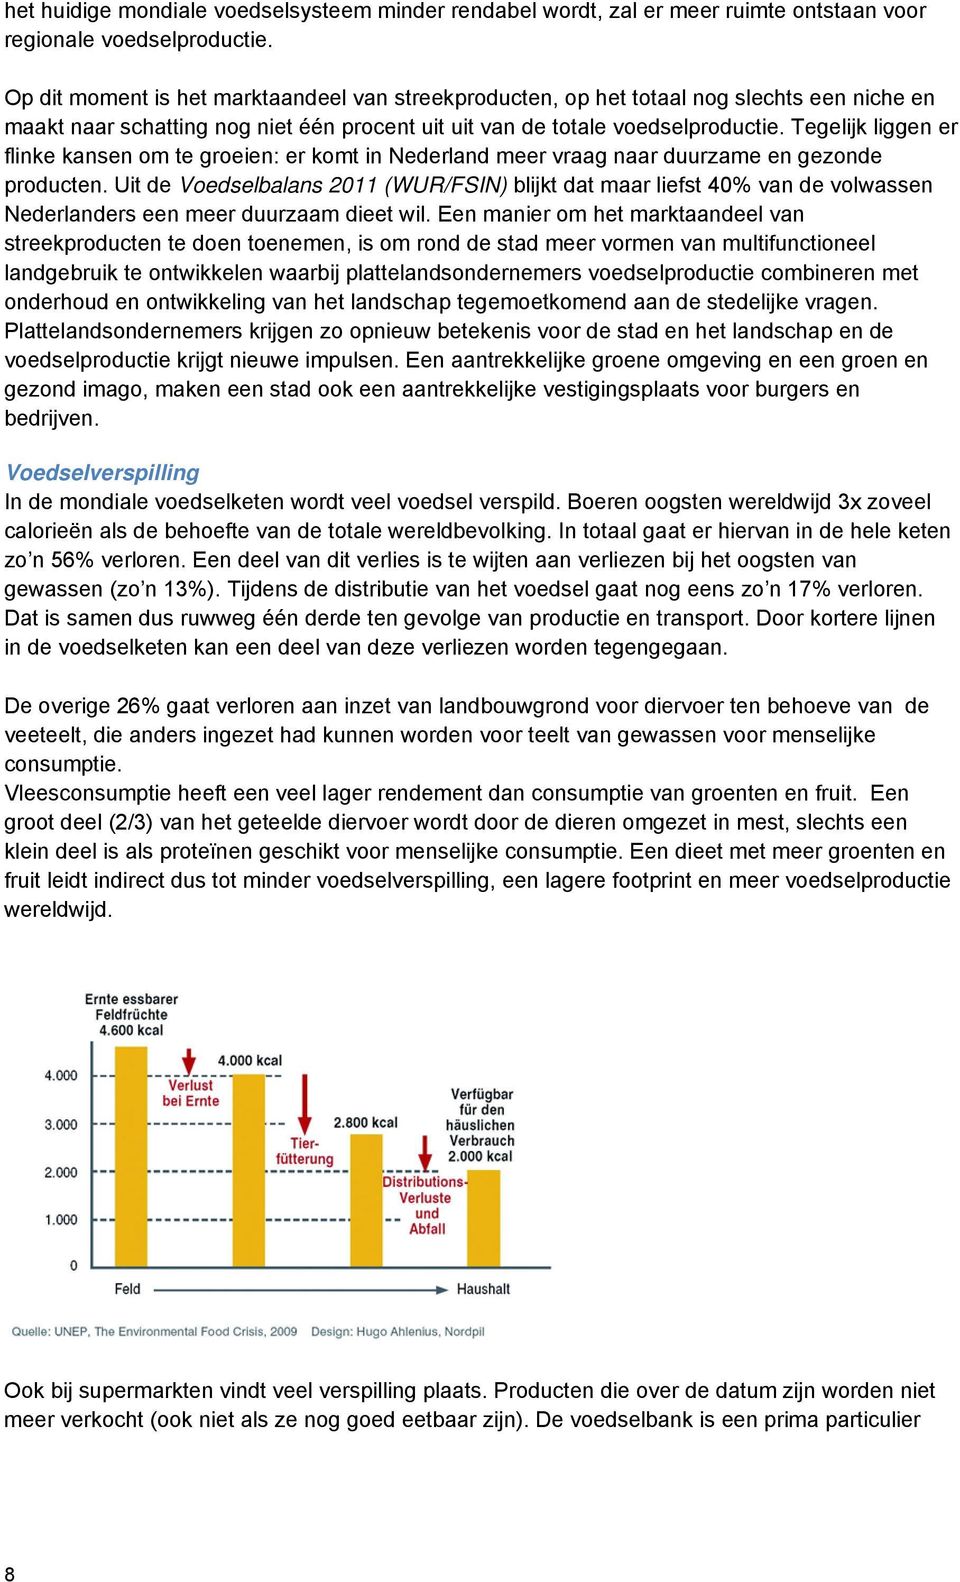 Tegelijk liggen er flinke kansen om te groeien: er komt in Nederland meer vraag naar duurzame en gezonde producten.